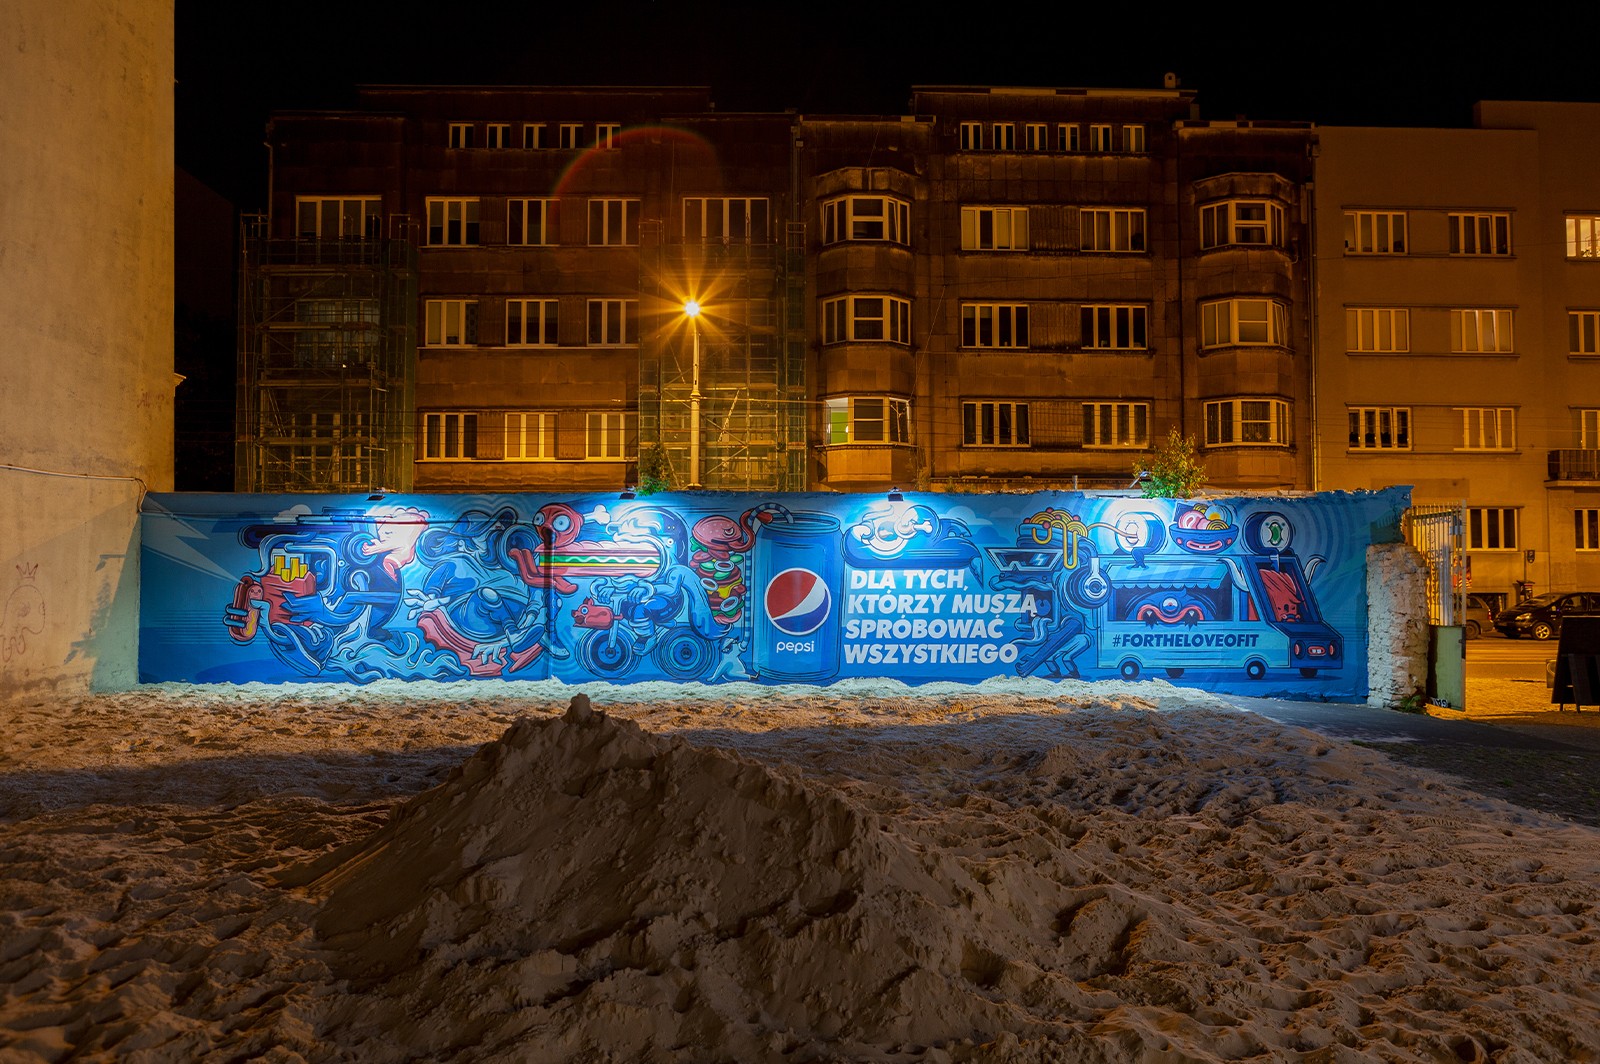 PepsiCo mural on Piotrkowska 217 street in Łódź | #FORTHELOVEOFIT | Portfolio